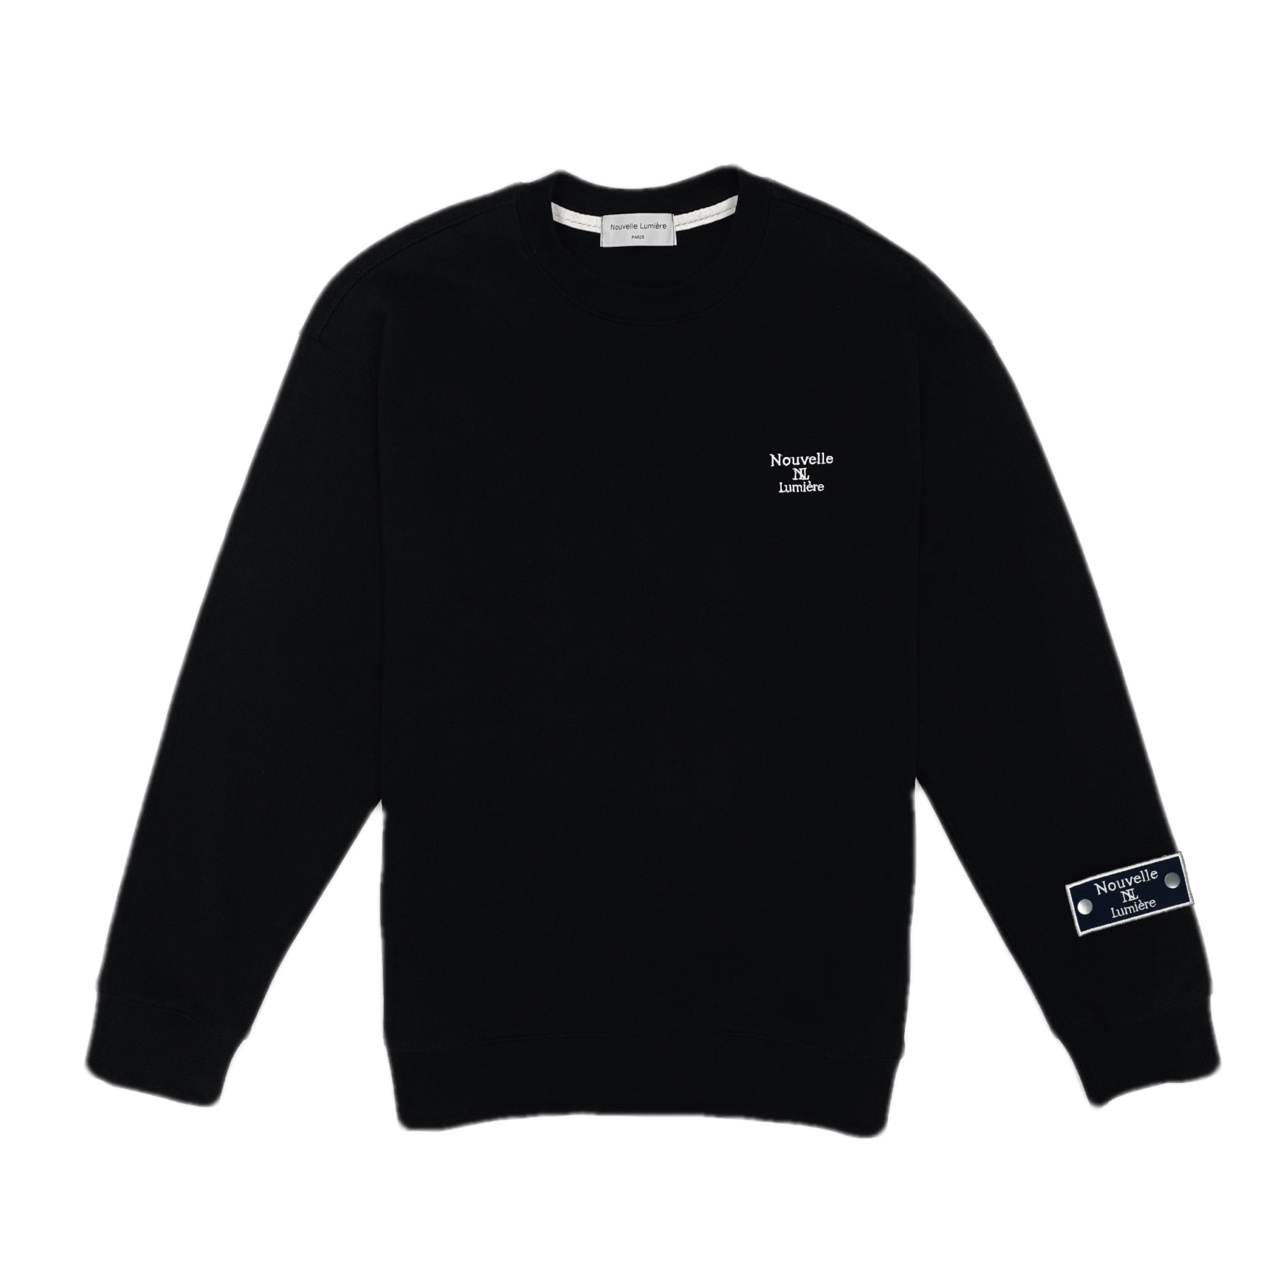 Nouvelmeier Classic Sweatshirt Black and Pen